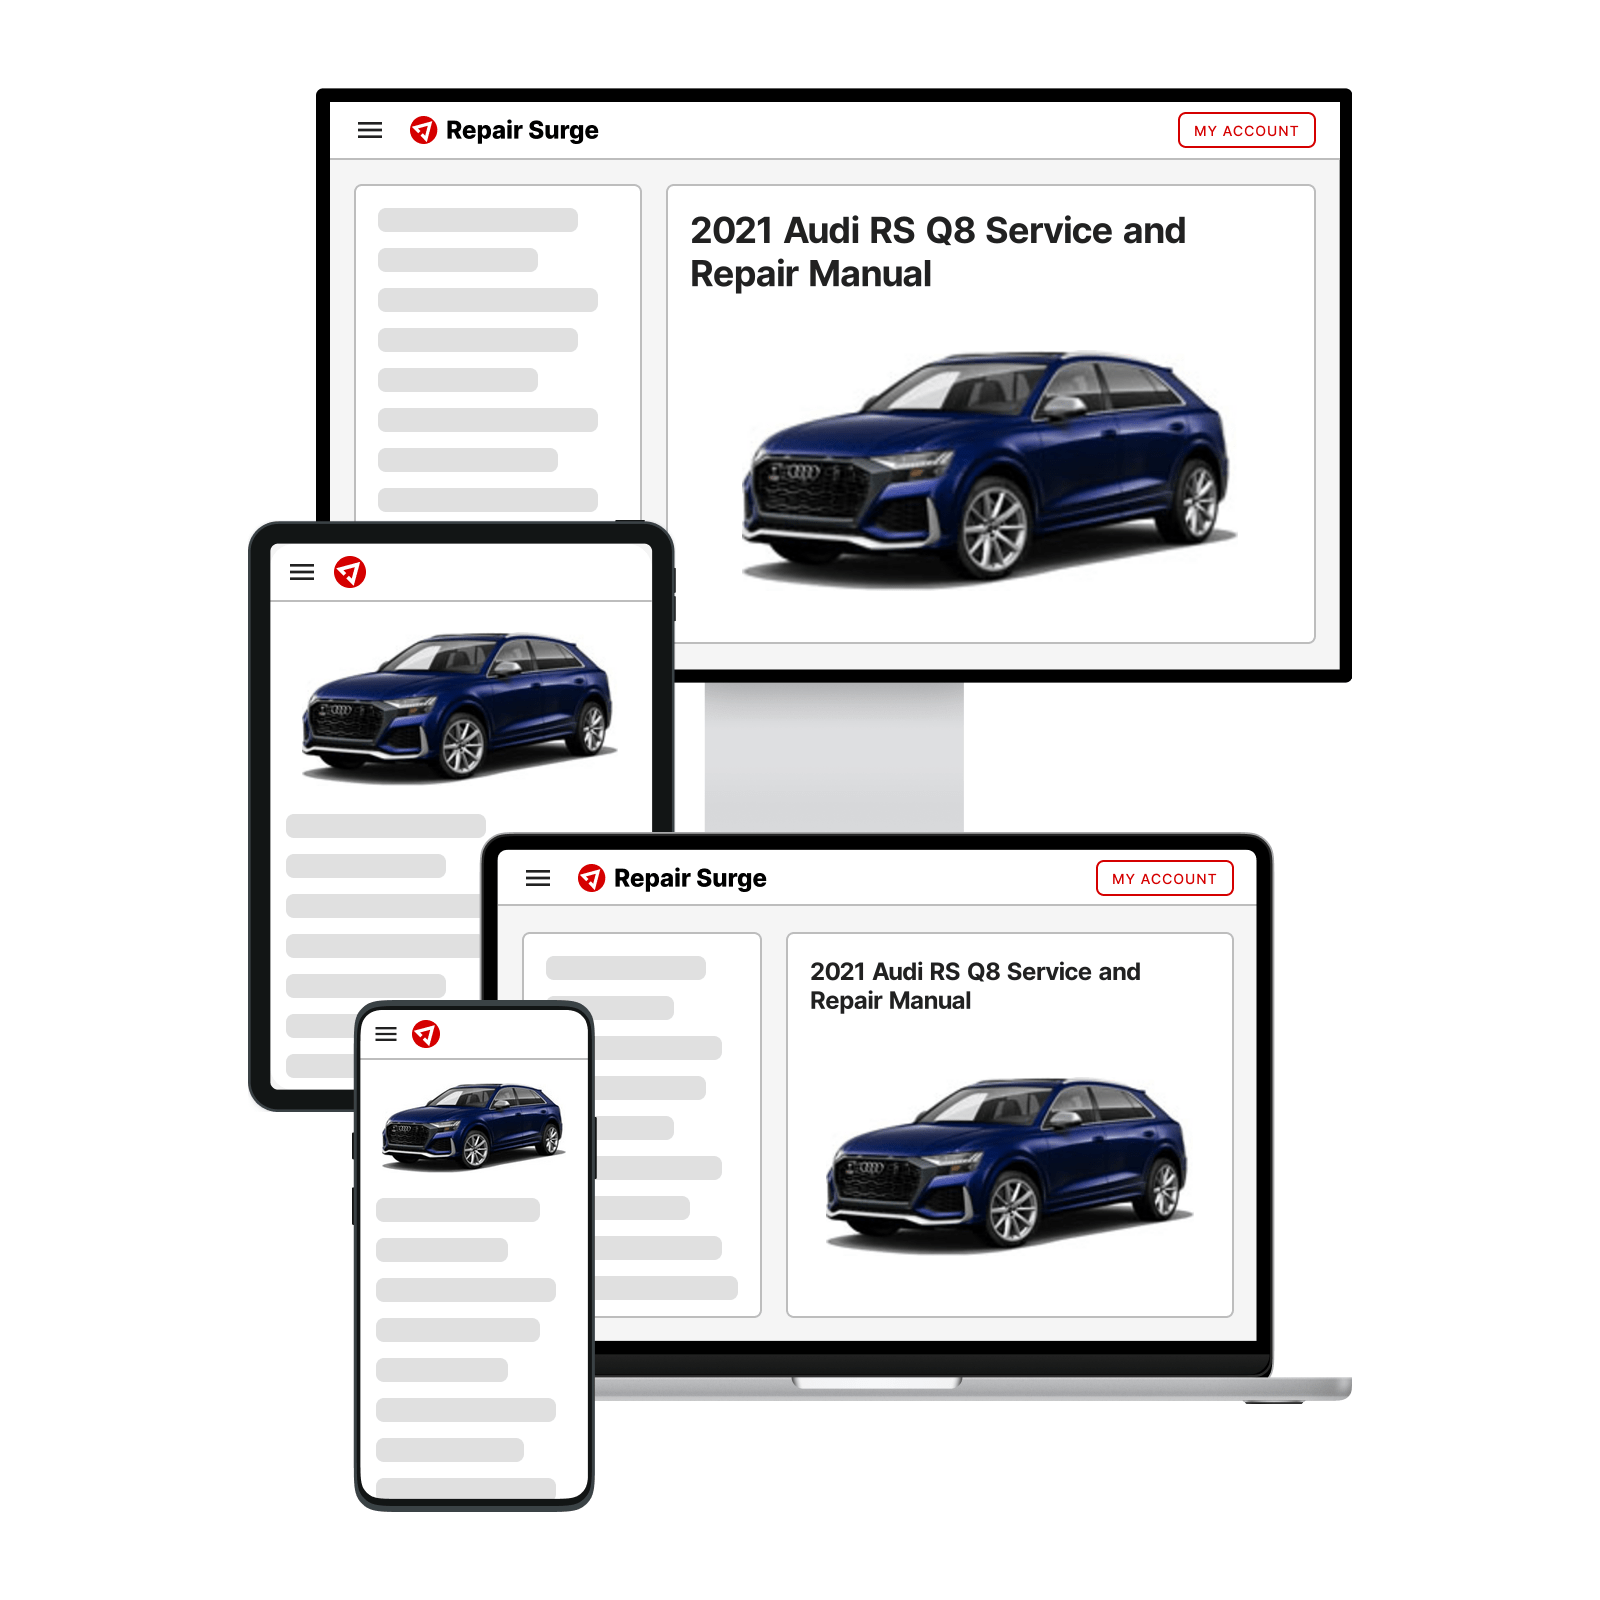 2021 Audi RS Q8 service and repair manual hero image